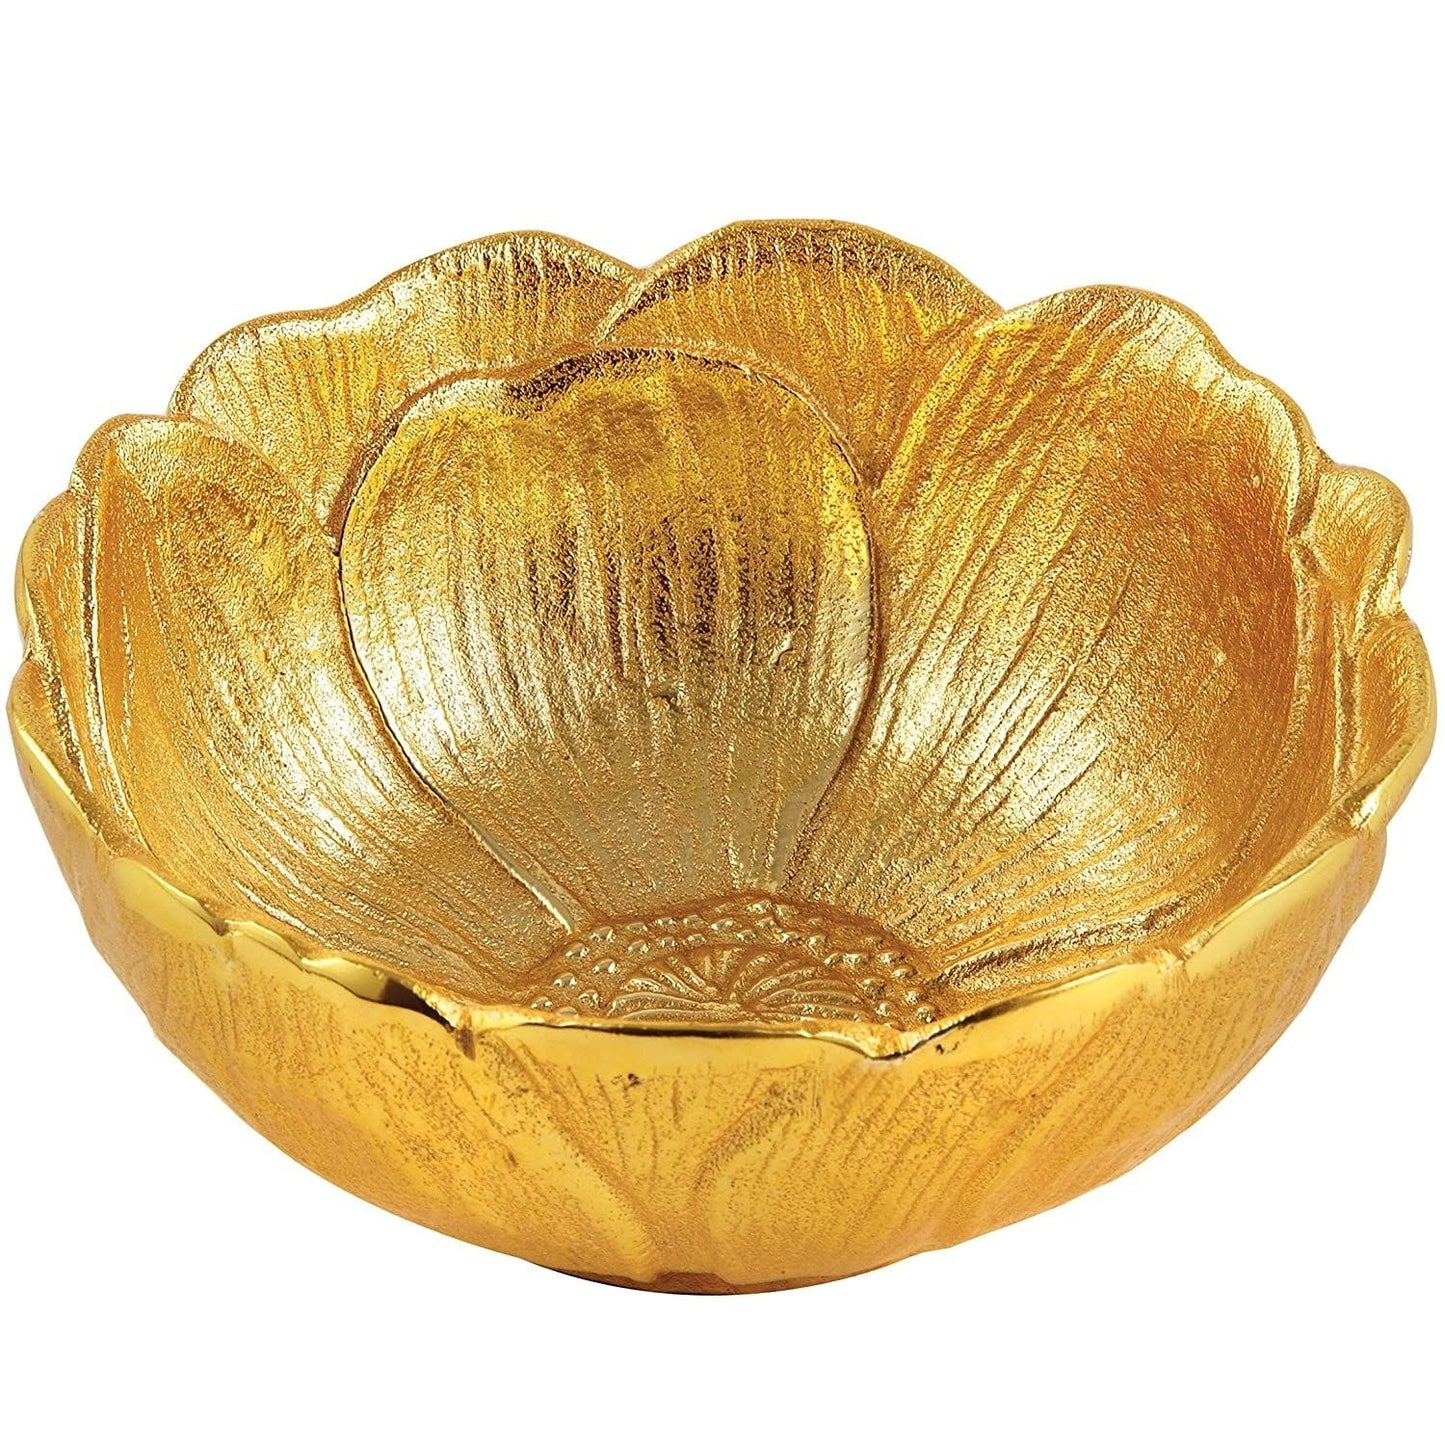 Leeber Gold Lotus Bowl, 4.75" x 2".